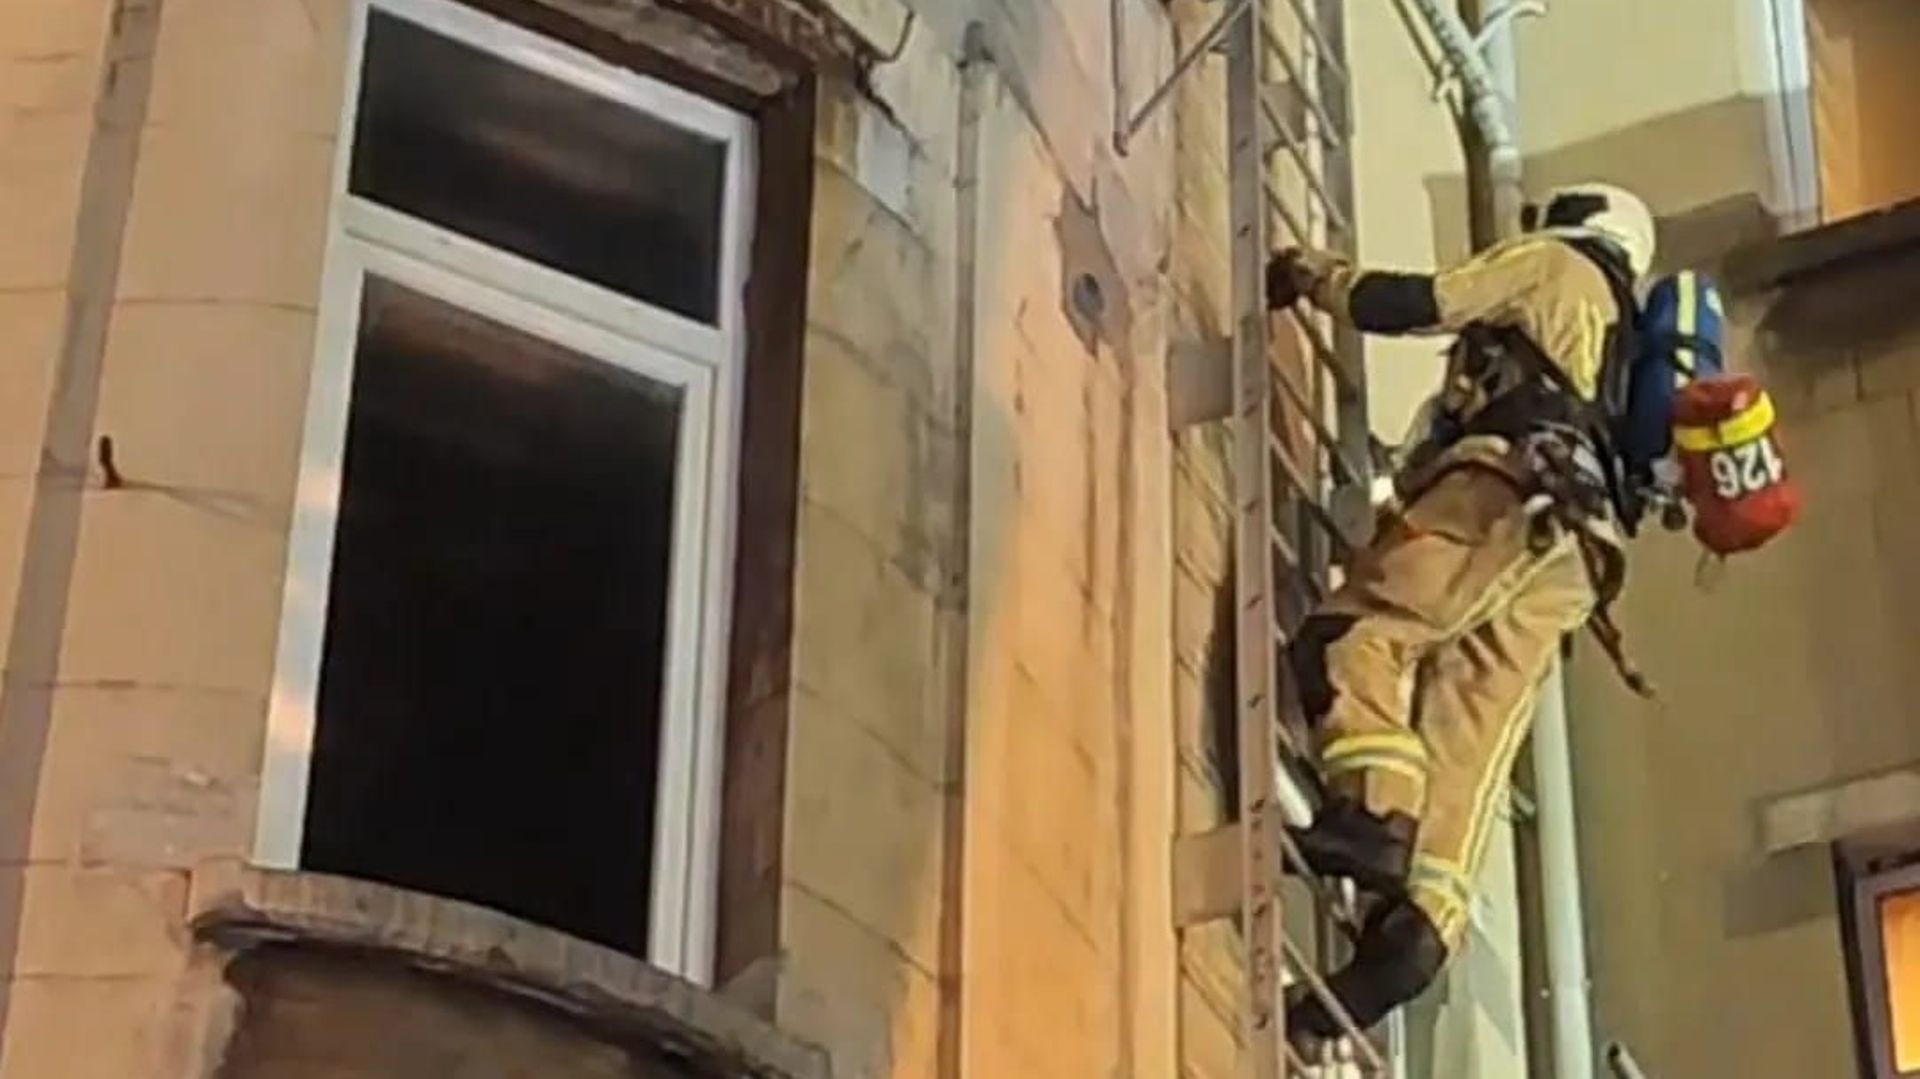 Incendie au 3e étage d'un hôtel bruxellois samedi